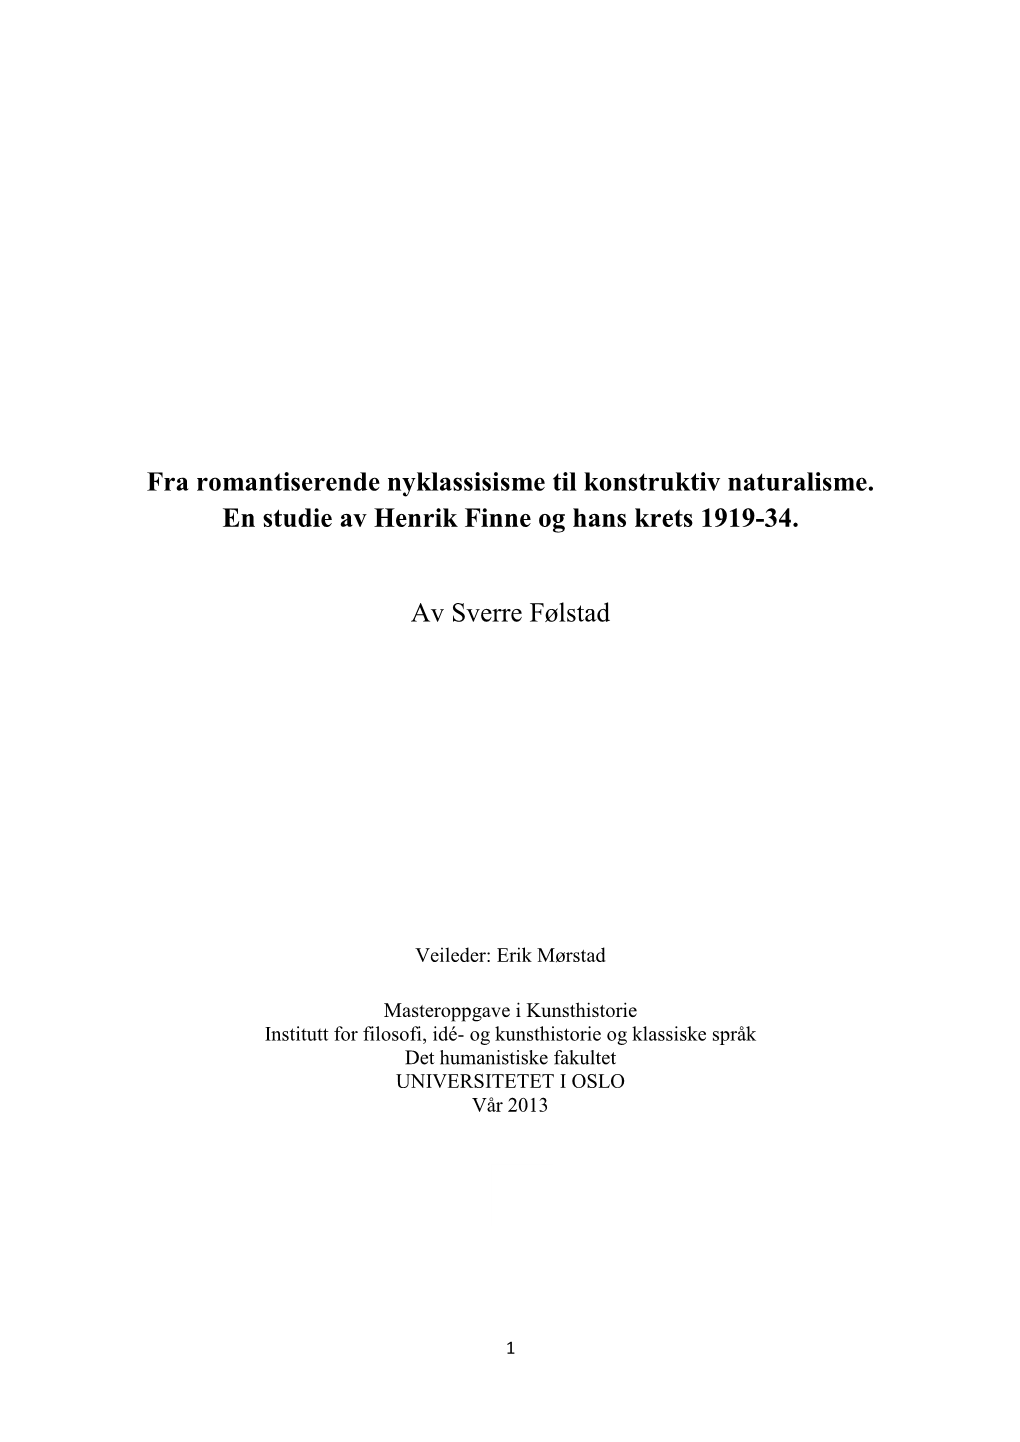 Fra Romantiserende Nyklassisisme Til Konstruktiv Naturalisme. En Studie Av Henrik Finne Og Hans Krets 1919-34